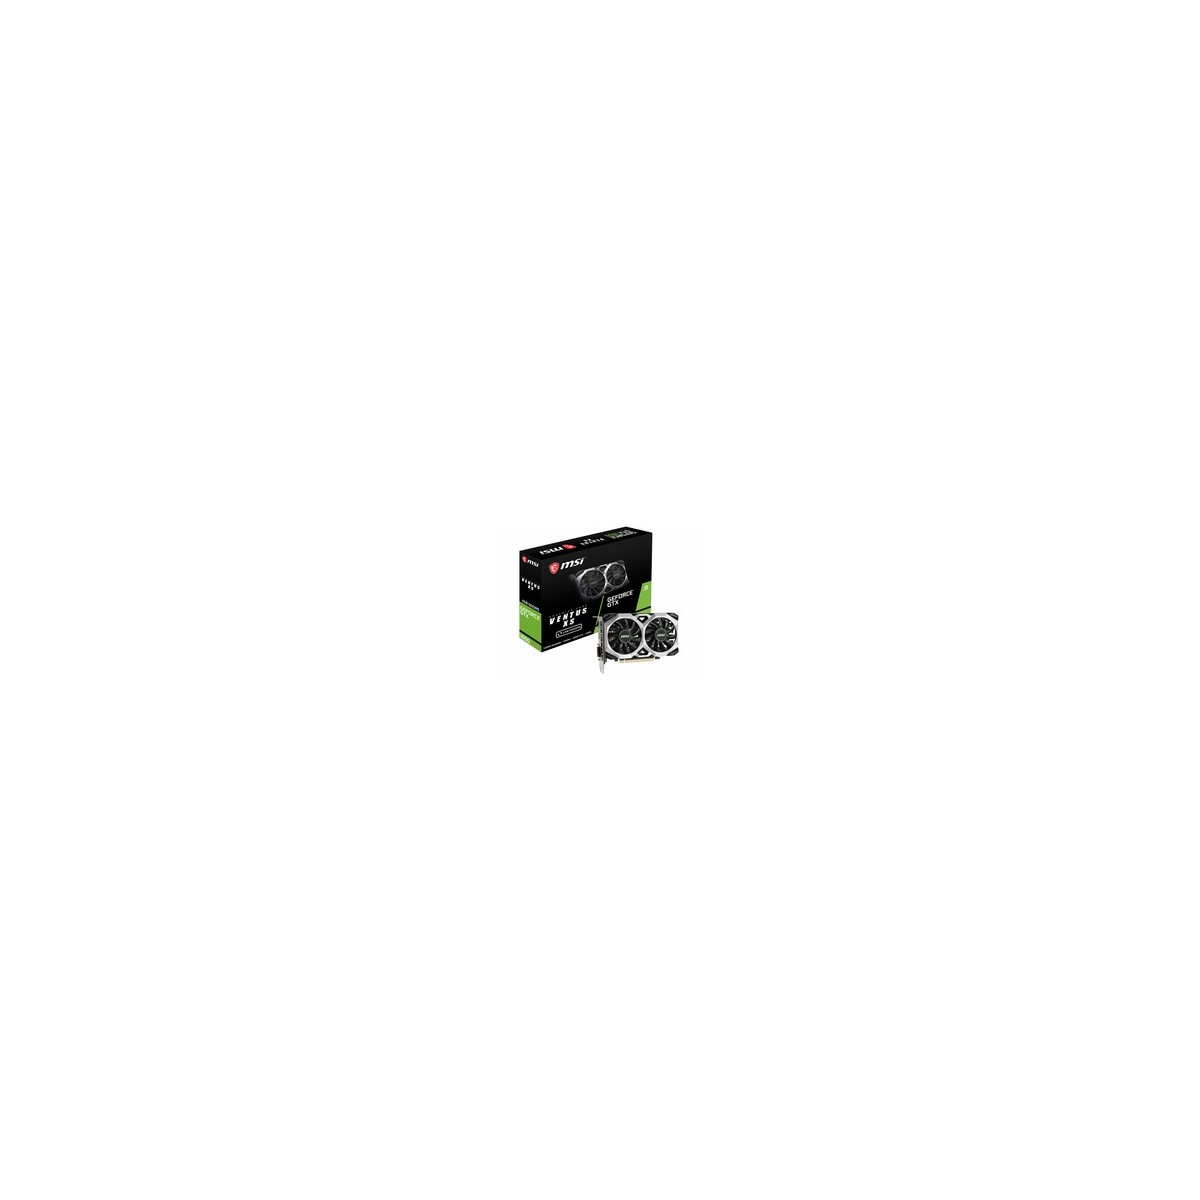 MSI GTX 1650 Ventus XS 4G - GeForce GTX 1650 - 4 GB - GDDR5 - 128 bit - 7680 x 4320 pixels - PCI Express x16 3.0